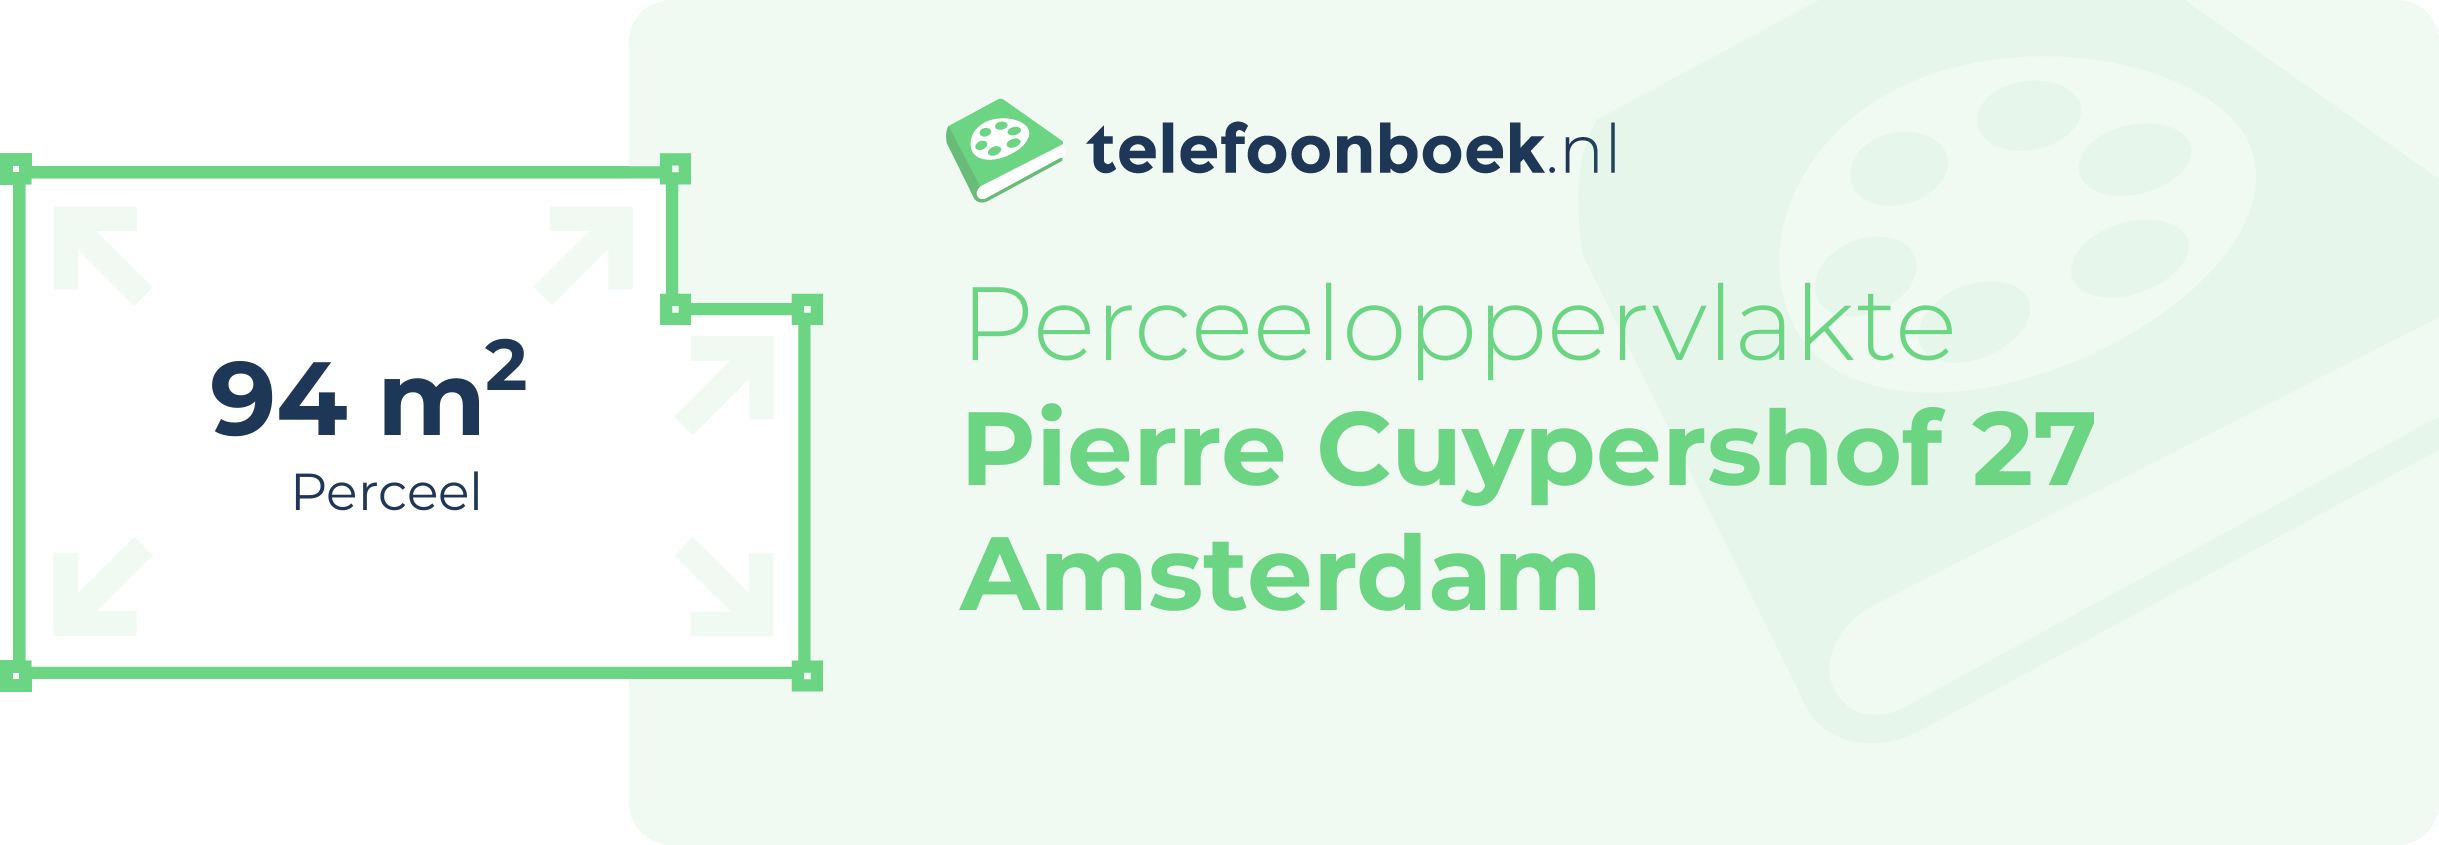 Perceeloppervlakte Pierre Cuypershof 27 Amsterdam